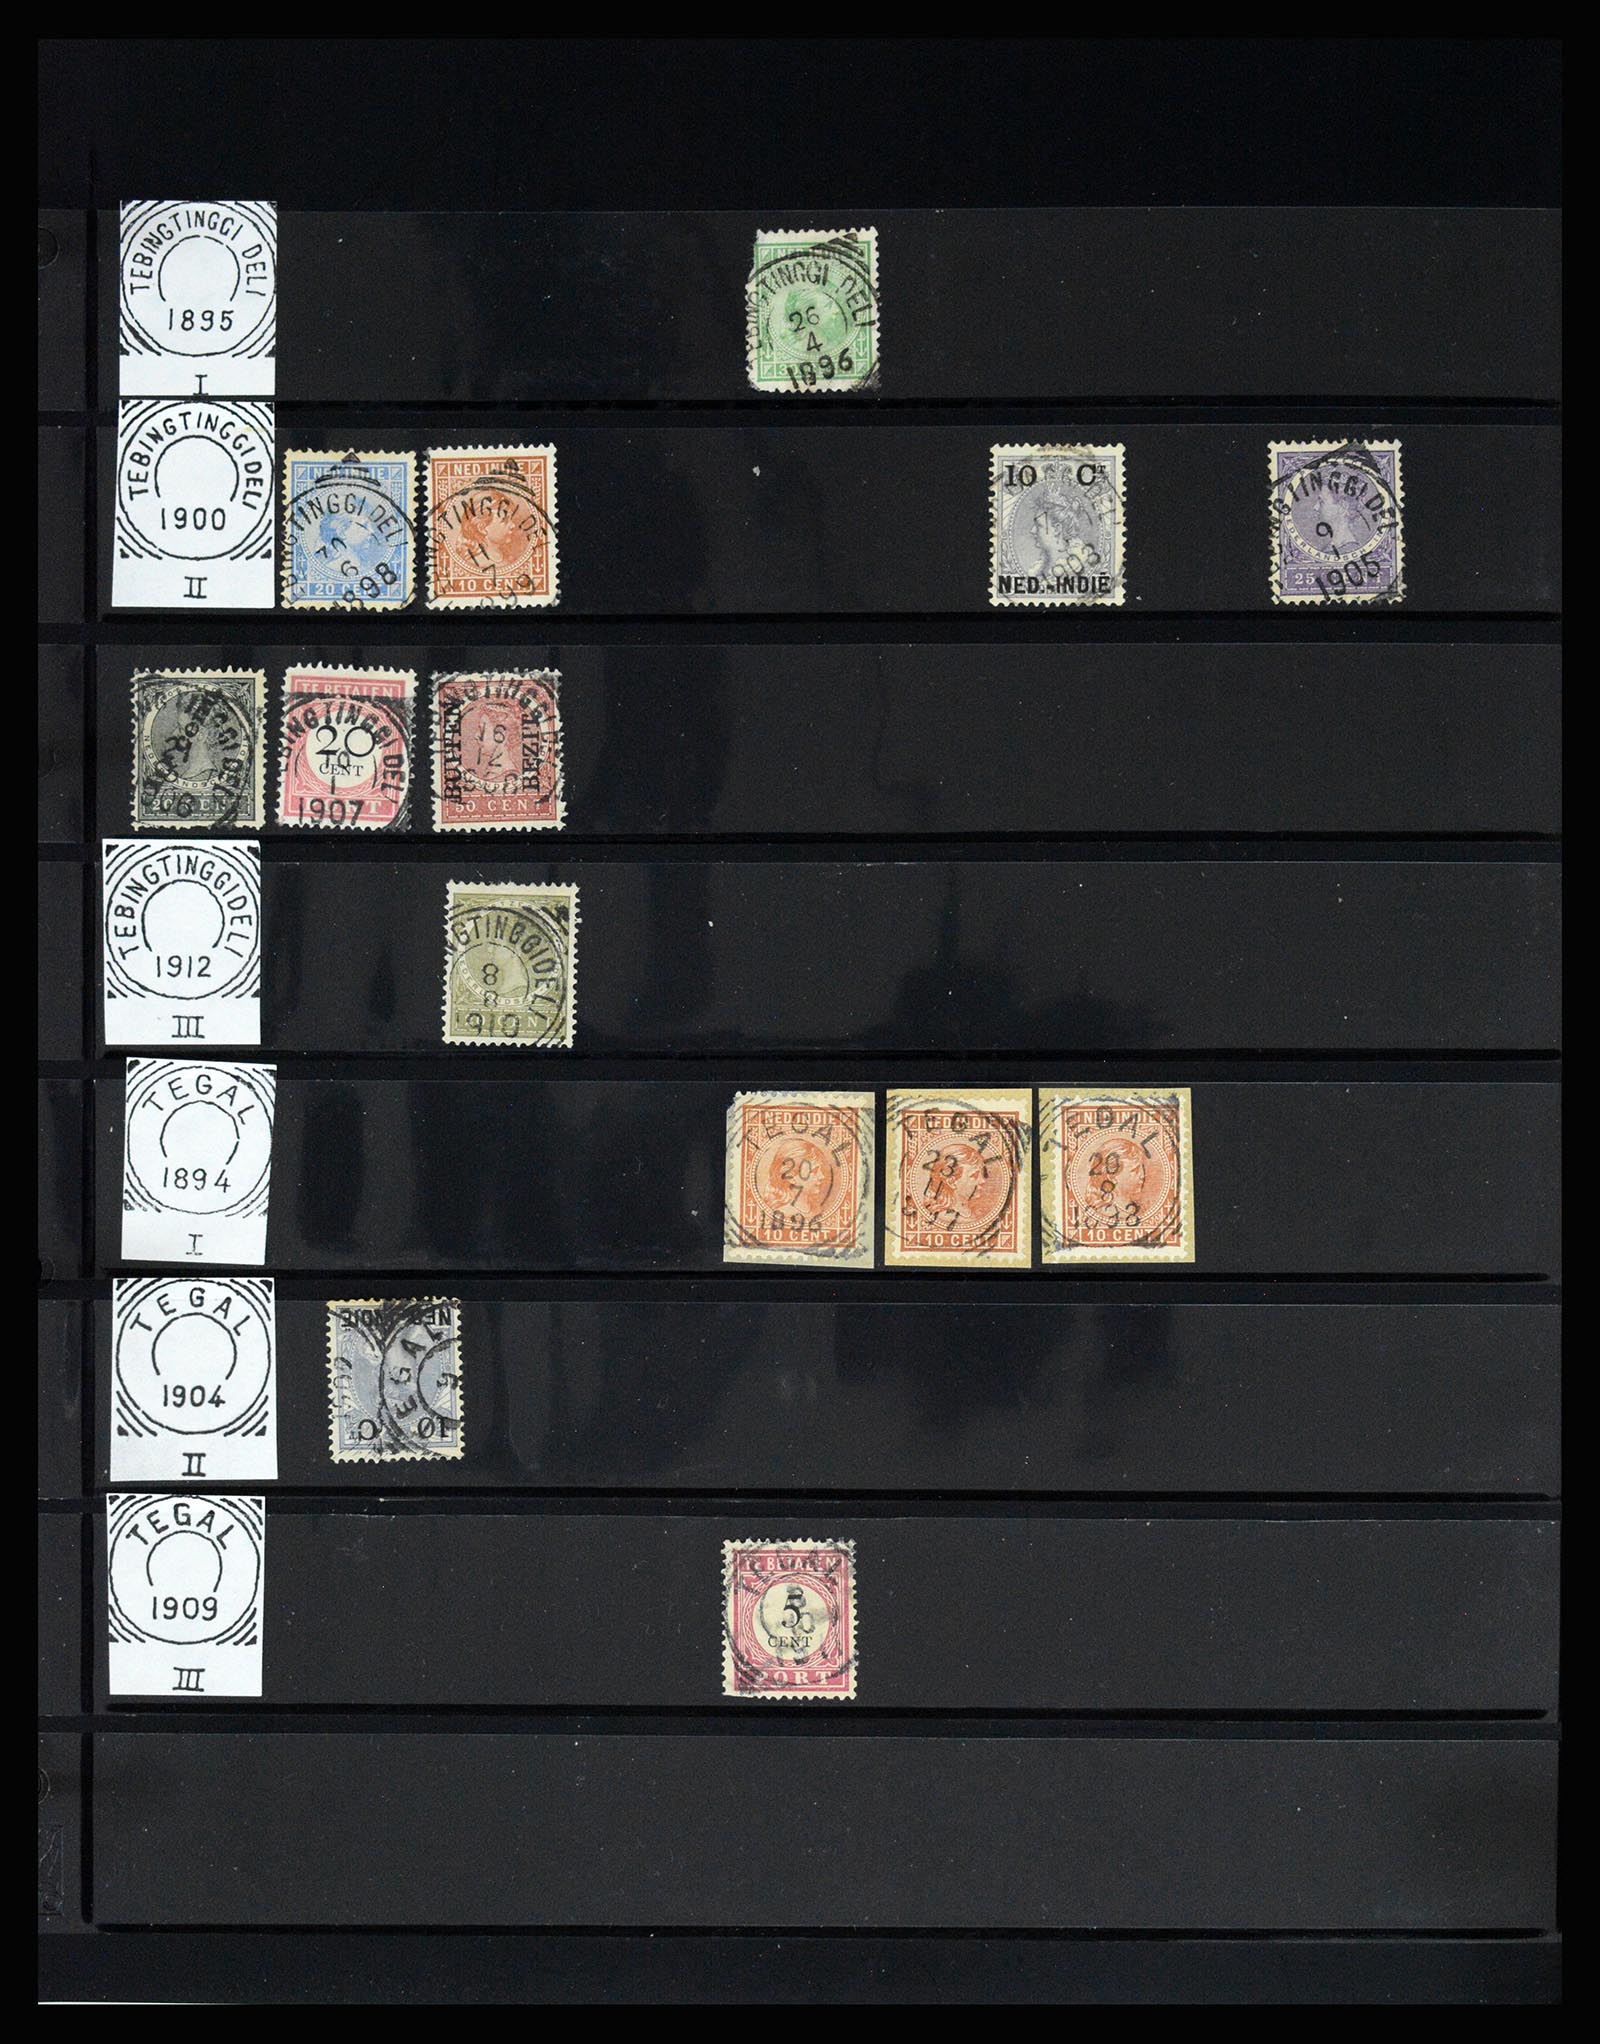 36512 156 - Stamp collection 36512 Nederlands Indië stempels 1872-1930.